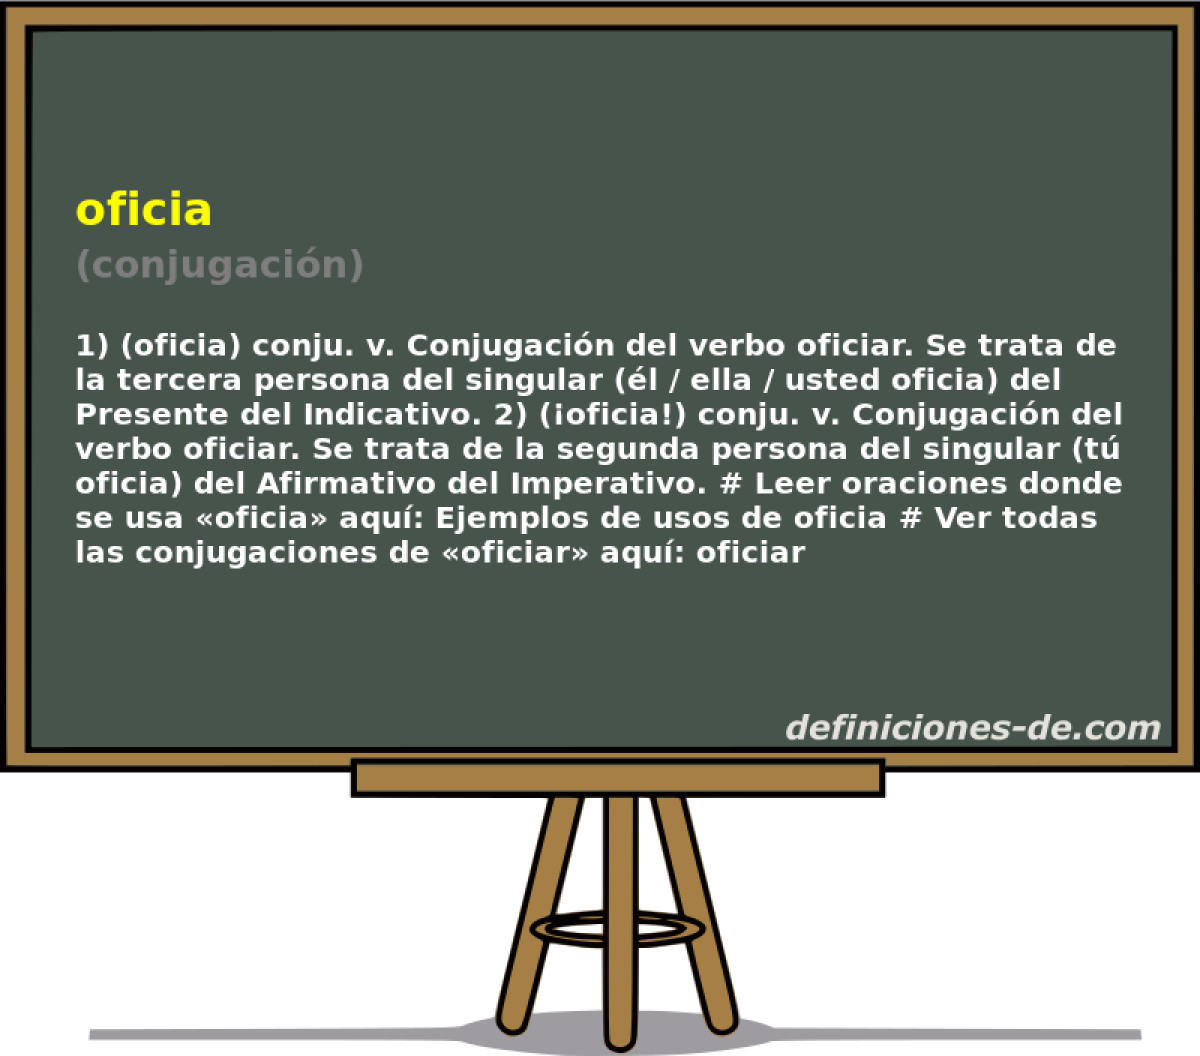 oficia (conjugacin)